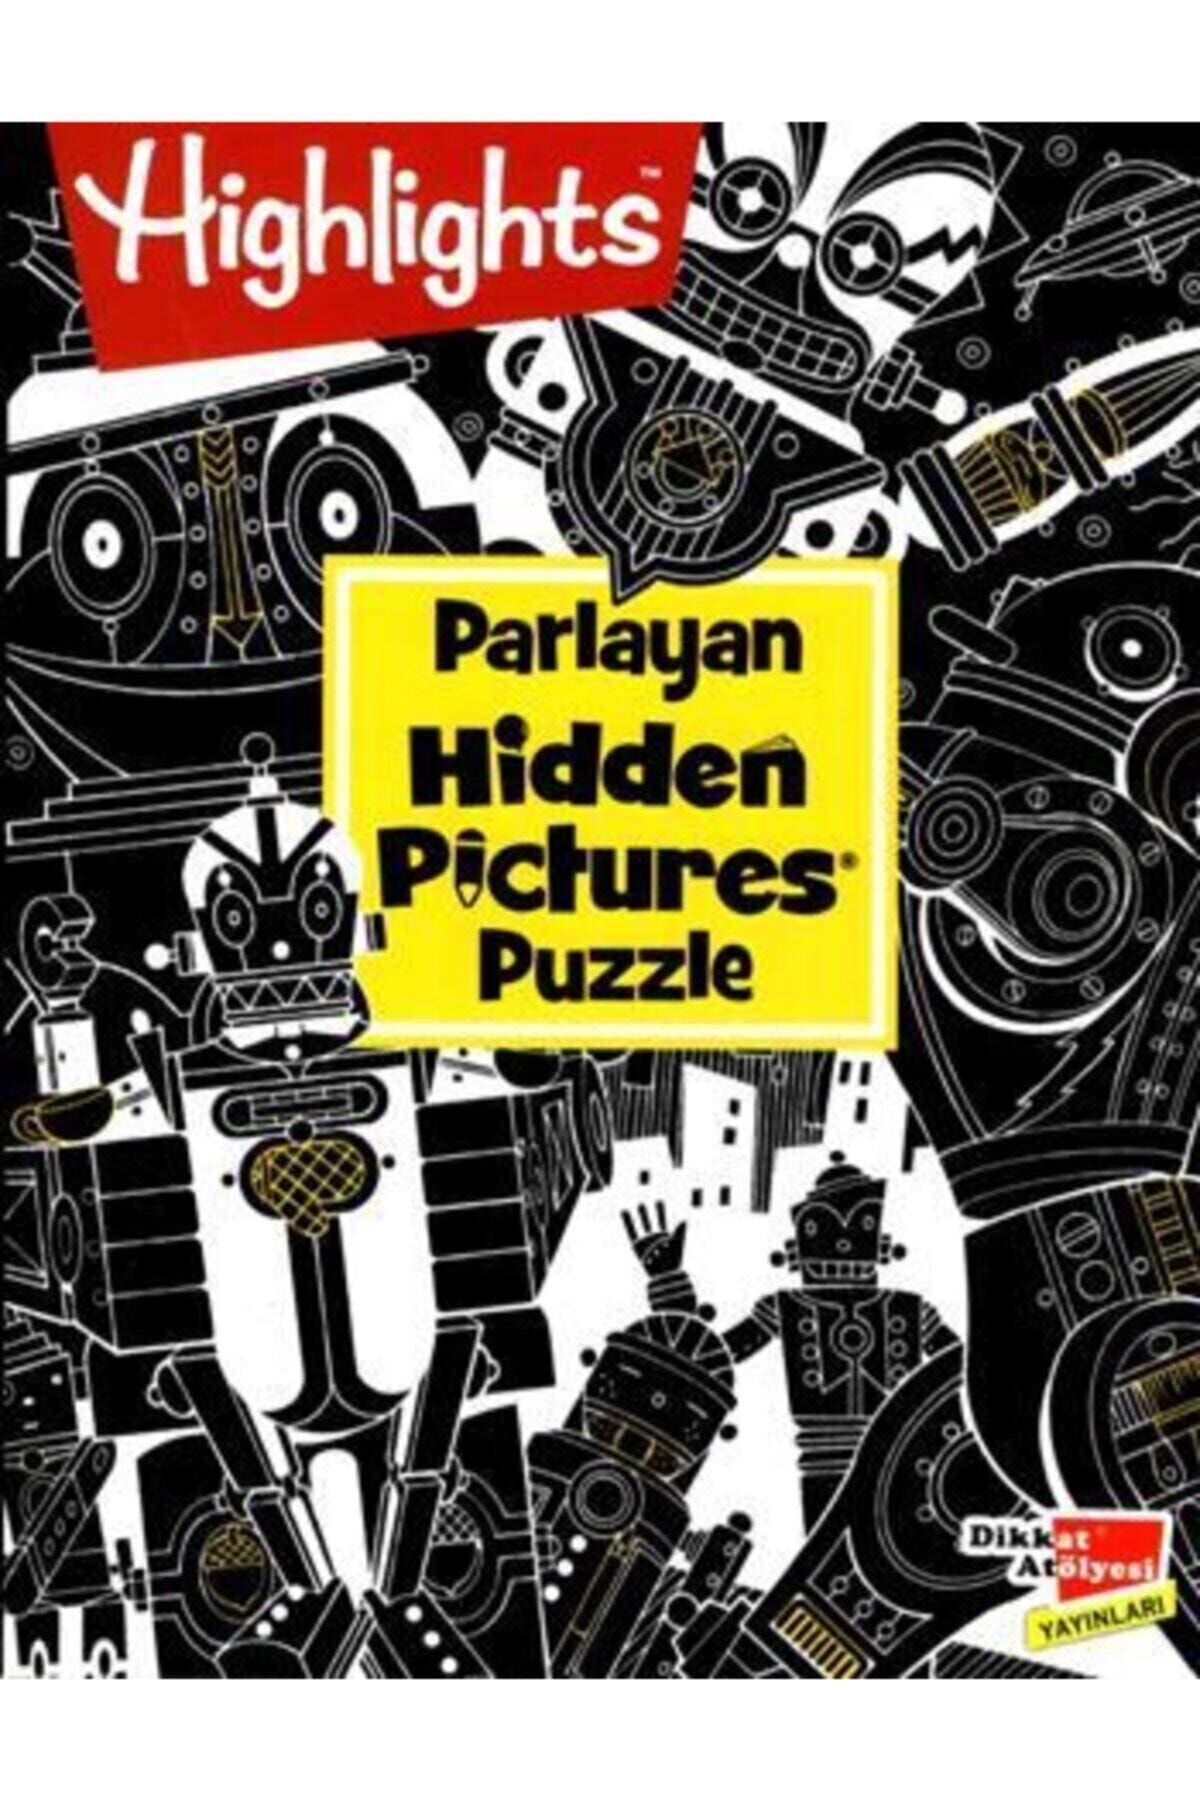 Dikkat Atölyesi Yayınları Highlights Parlayan Hidden Pictures Puzzle Dikkat Geliştirme Kitabı - Kollektif - Dikkat Atölyesi